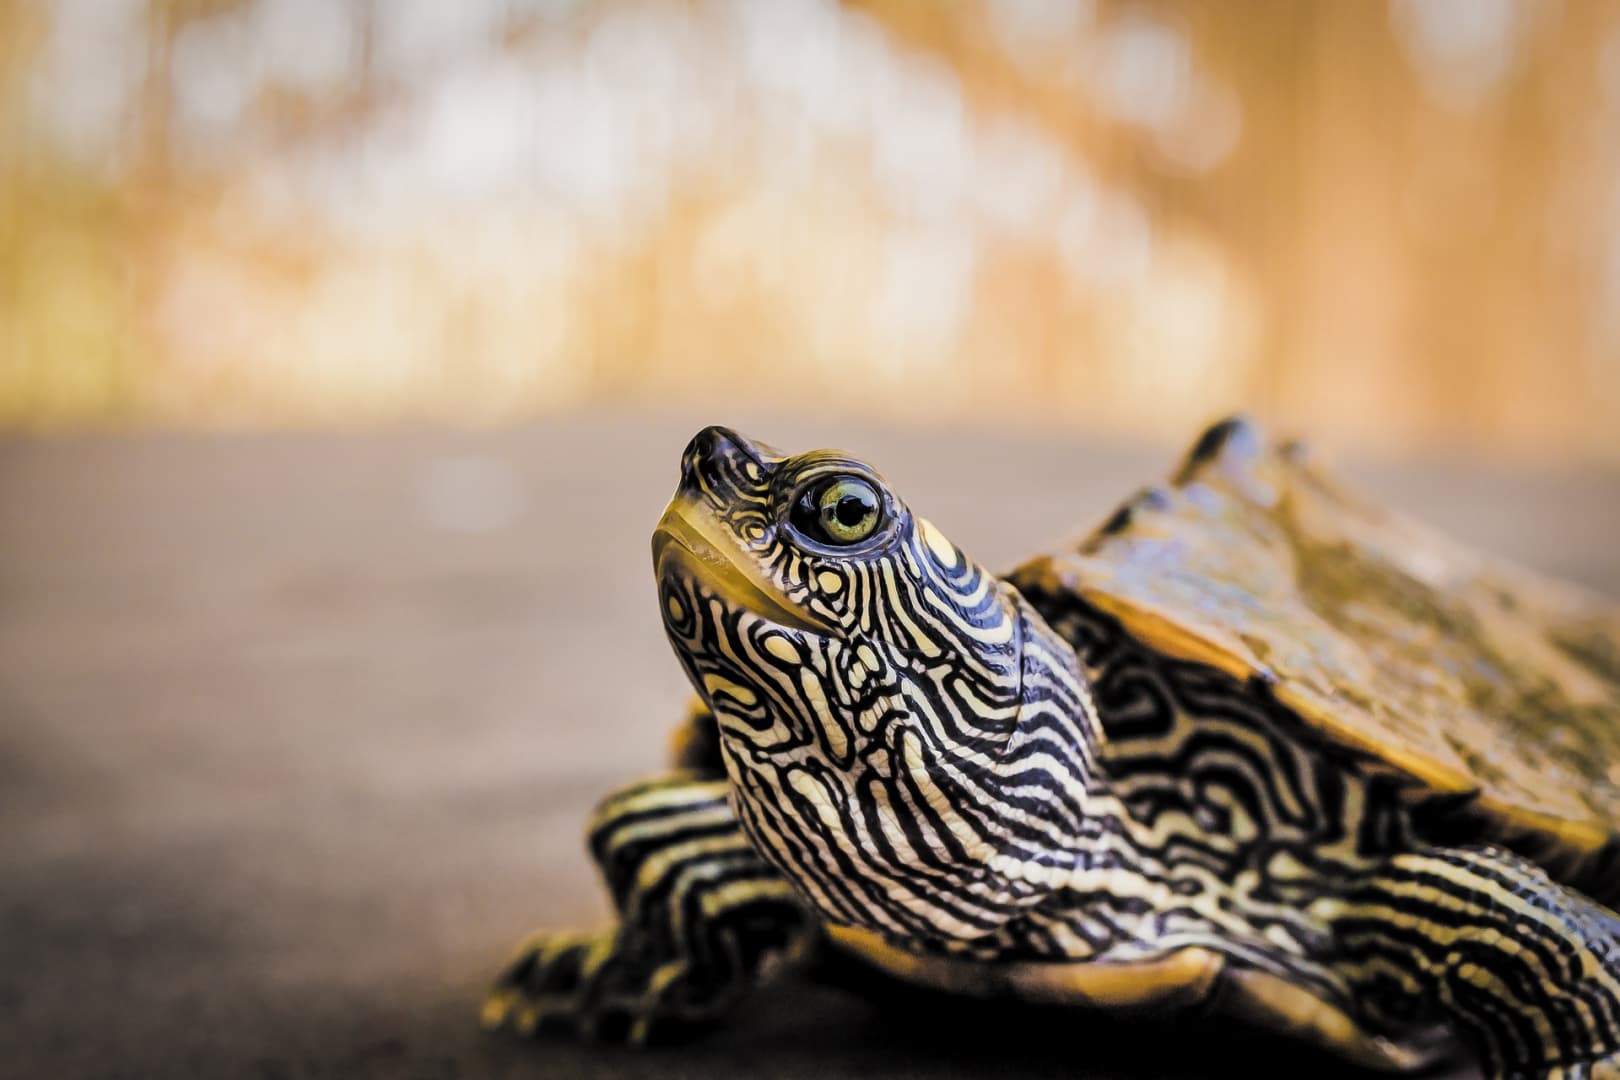 Csaknem kétszáz teknőst találtak egy bőröndben egy Galápagos-szigeteki repülőtéren